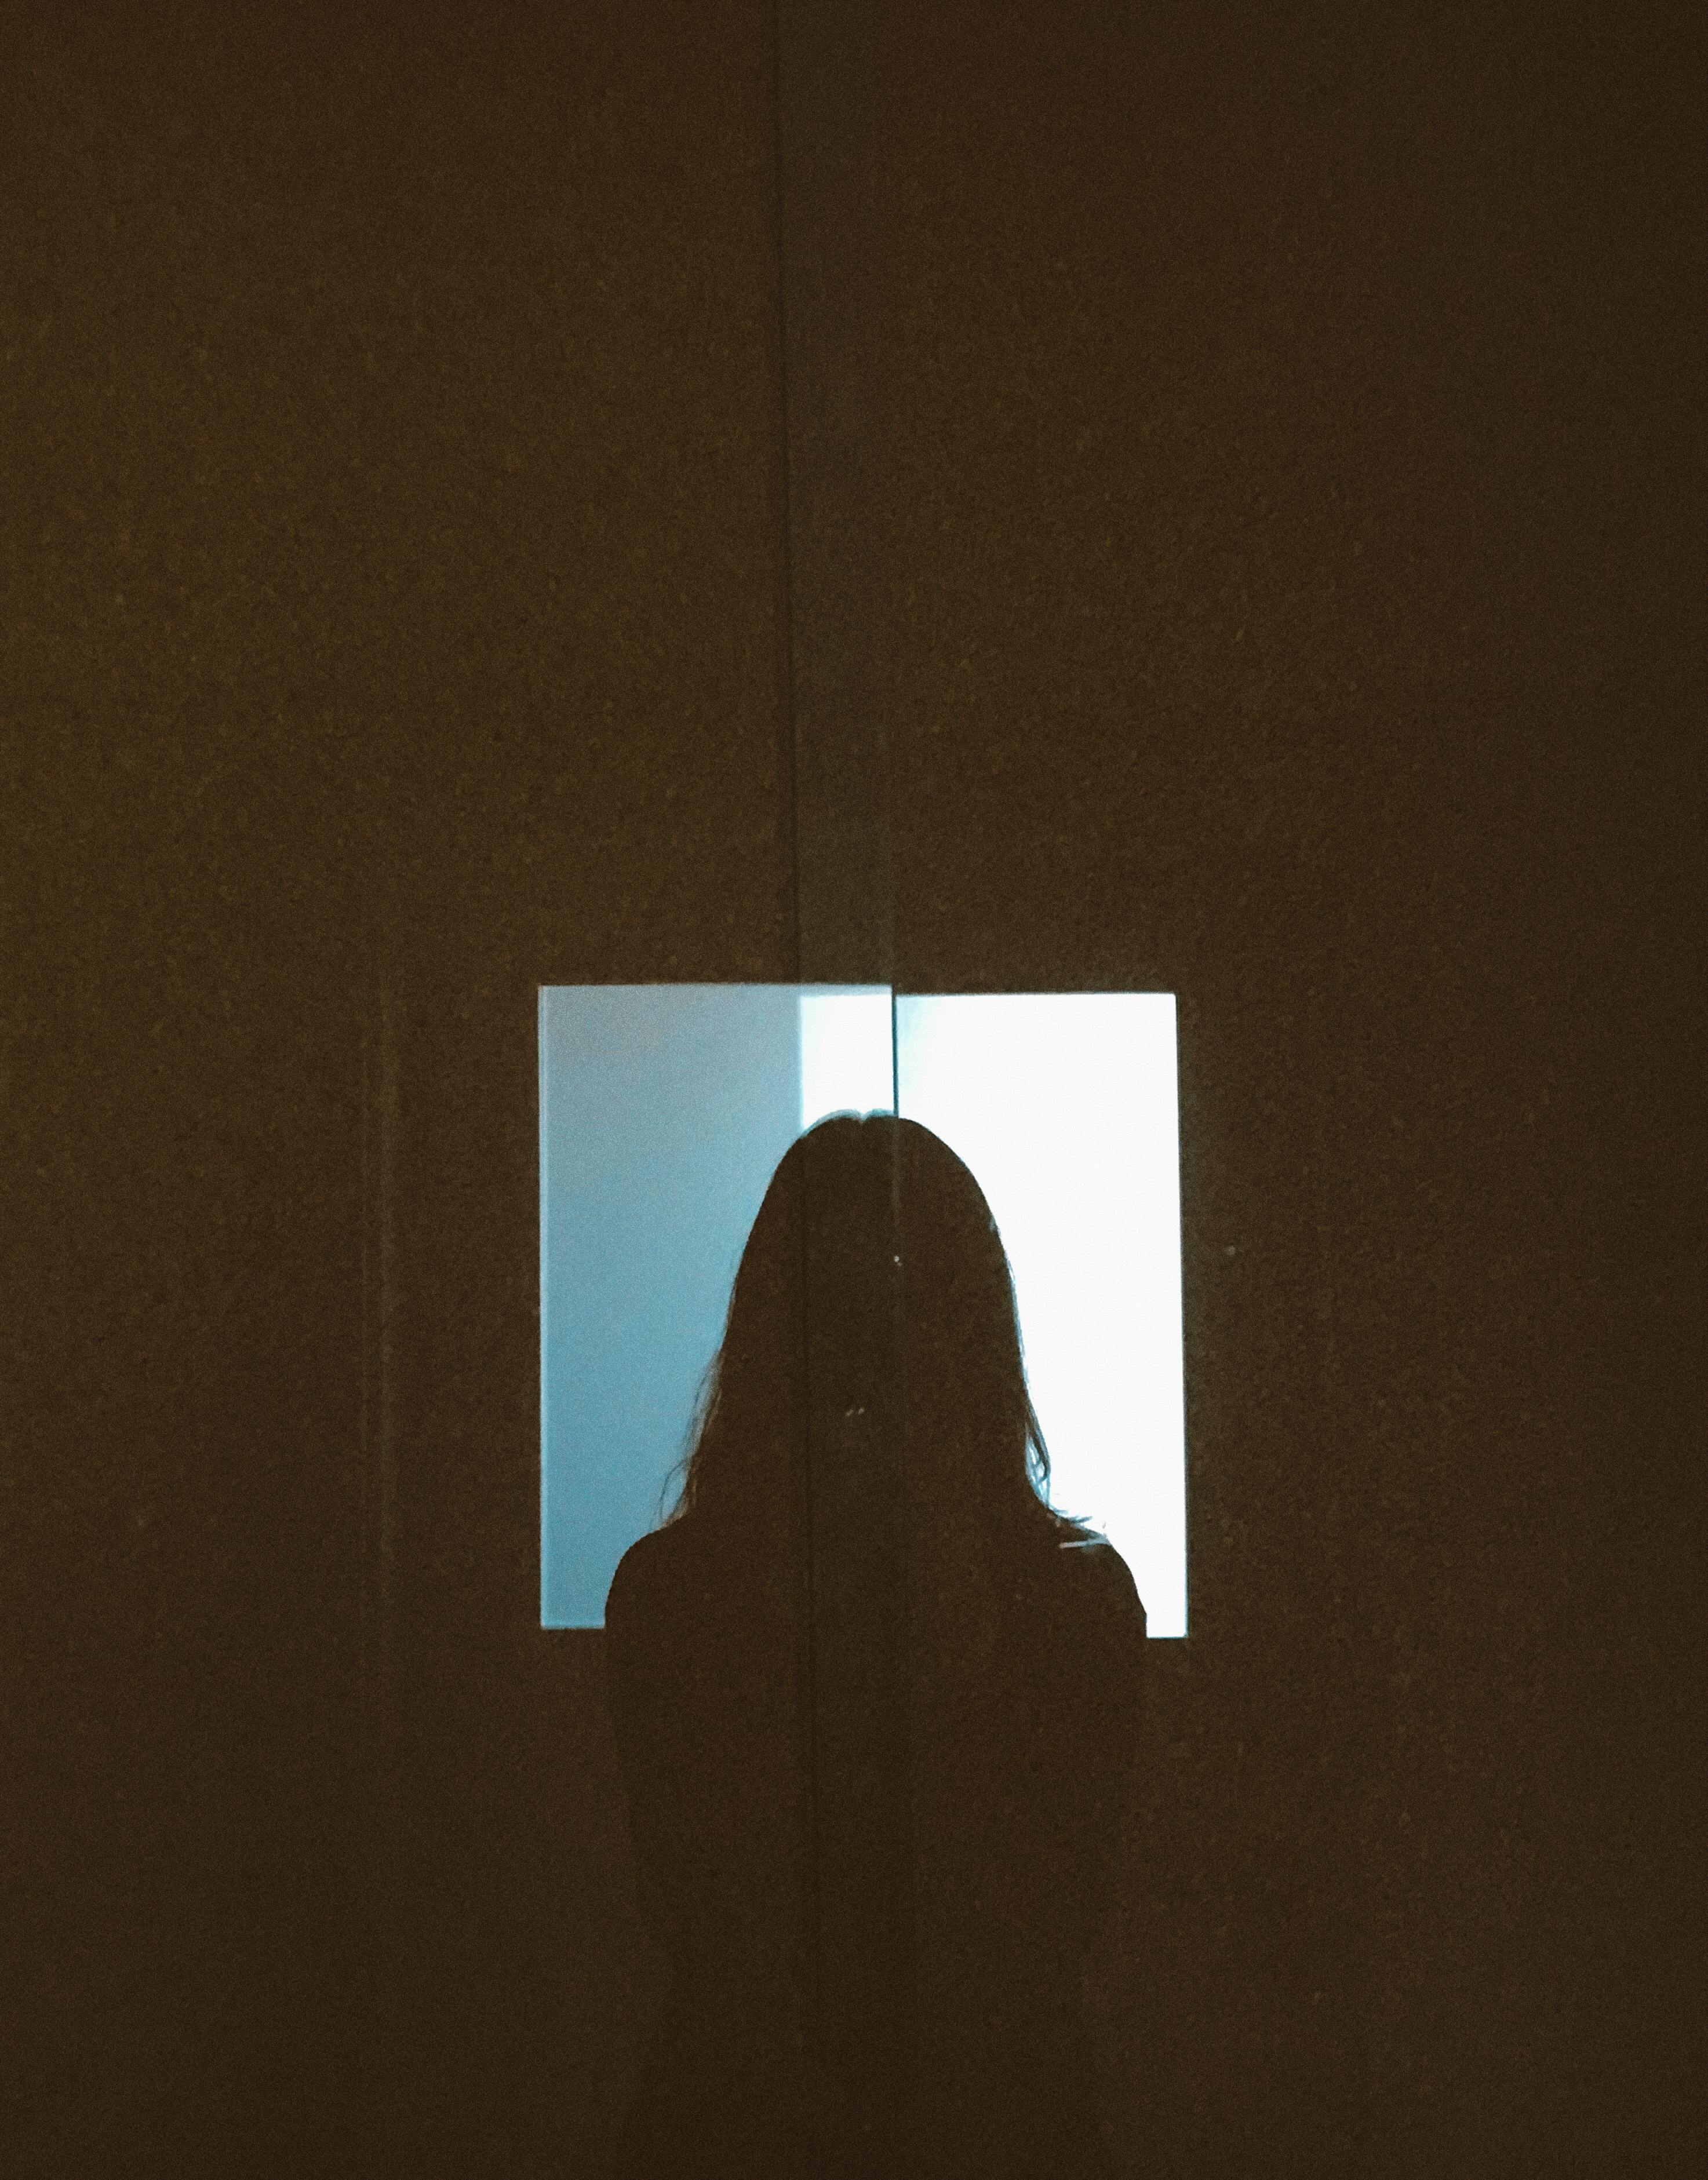 Silhouette d'une personne | Source : Pexels